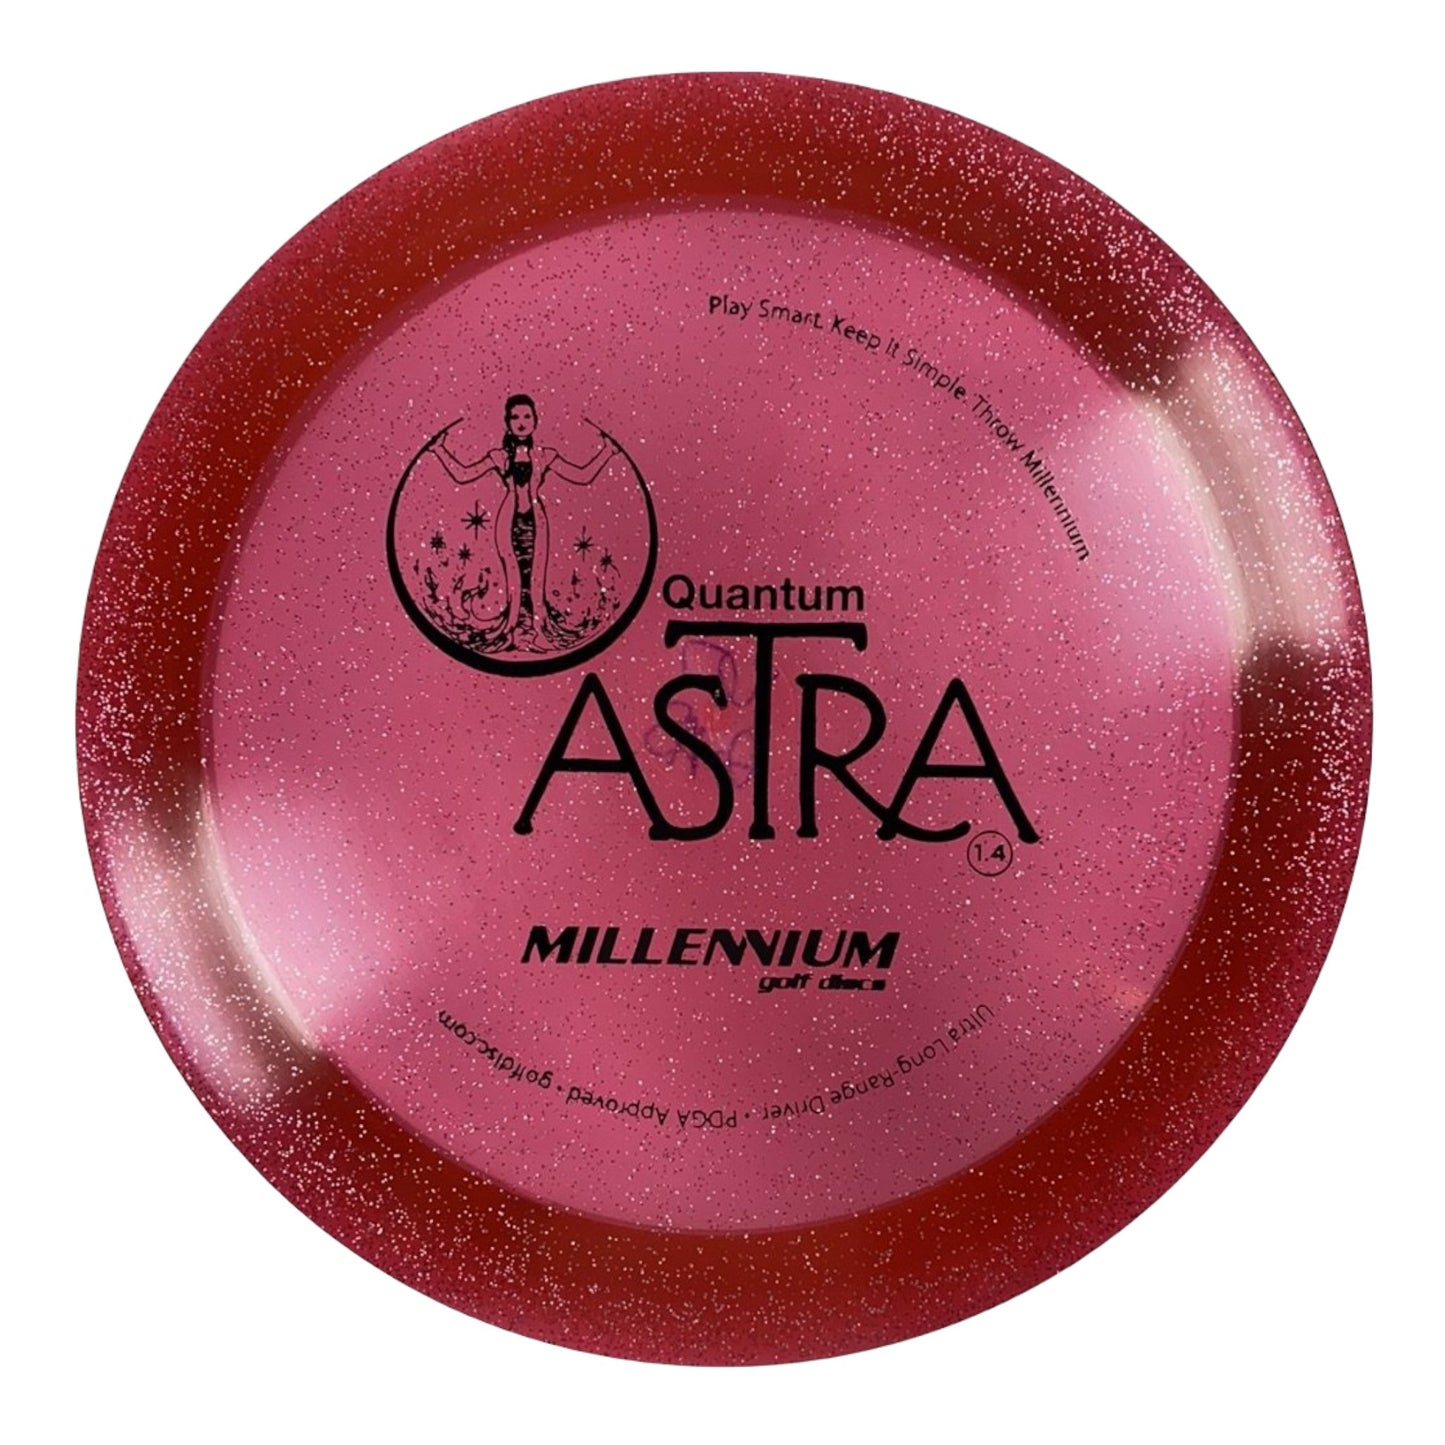 Millennium Golf Discs Astra | Quantum Stardust | Red/Black 167-168g Disc Golf